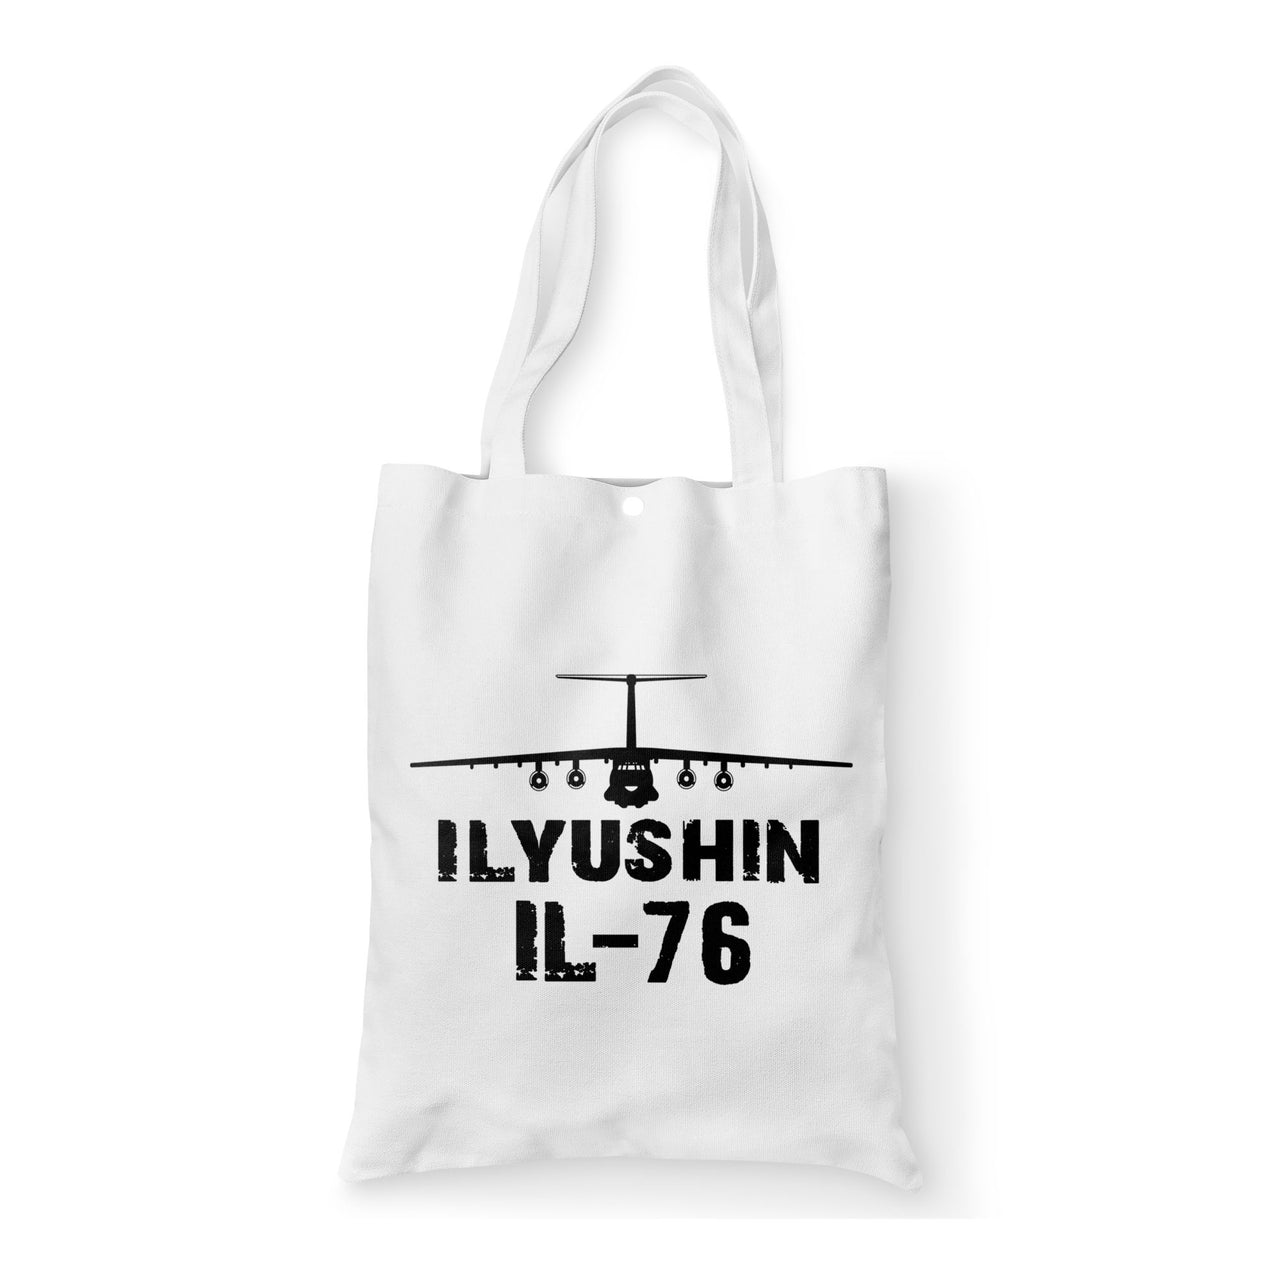 ILyushin IL-76 & Plane Designed Tote Bags